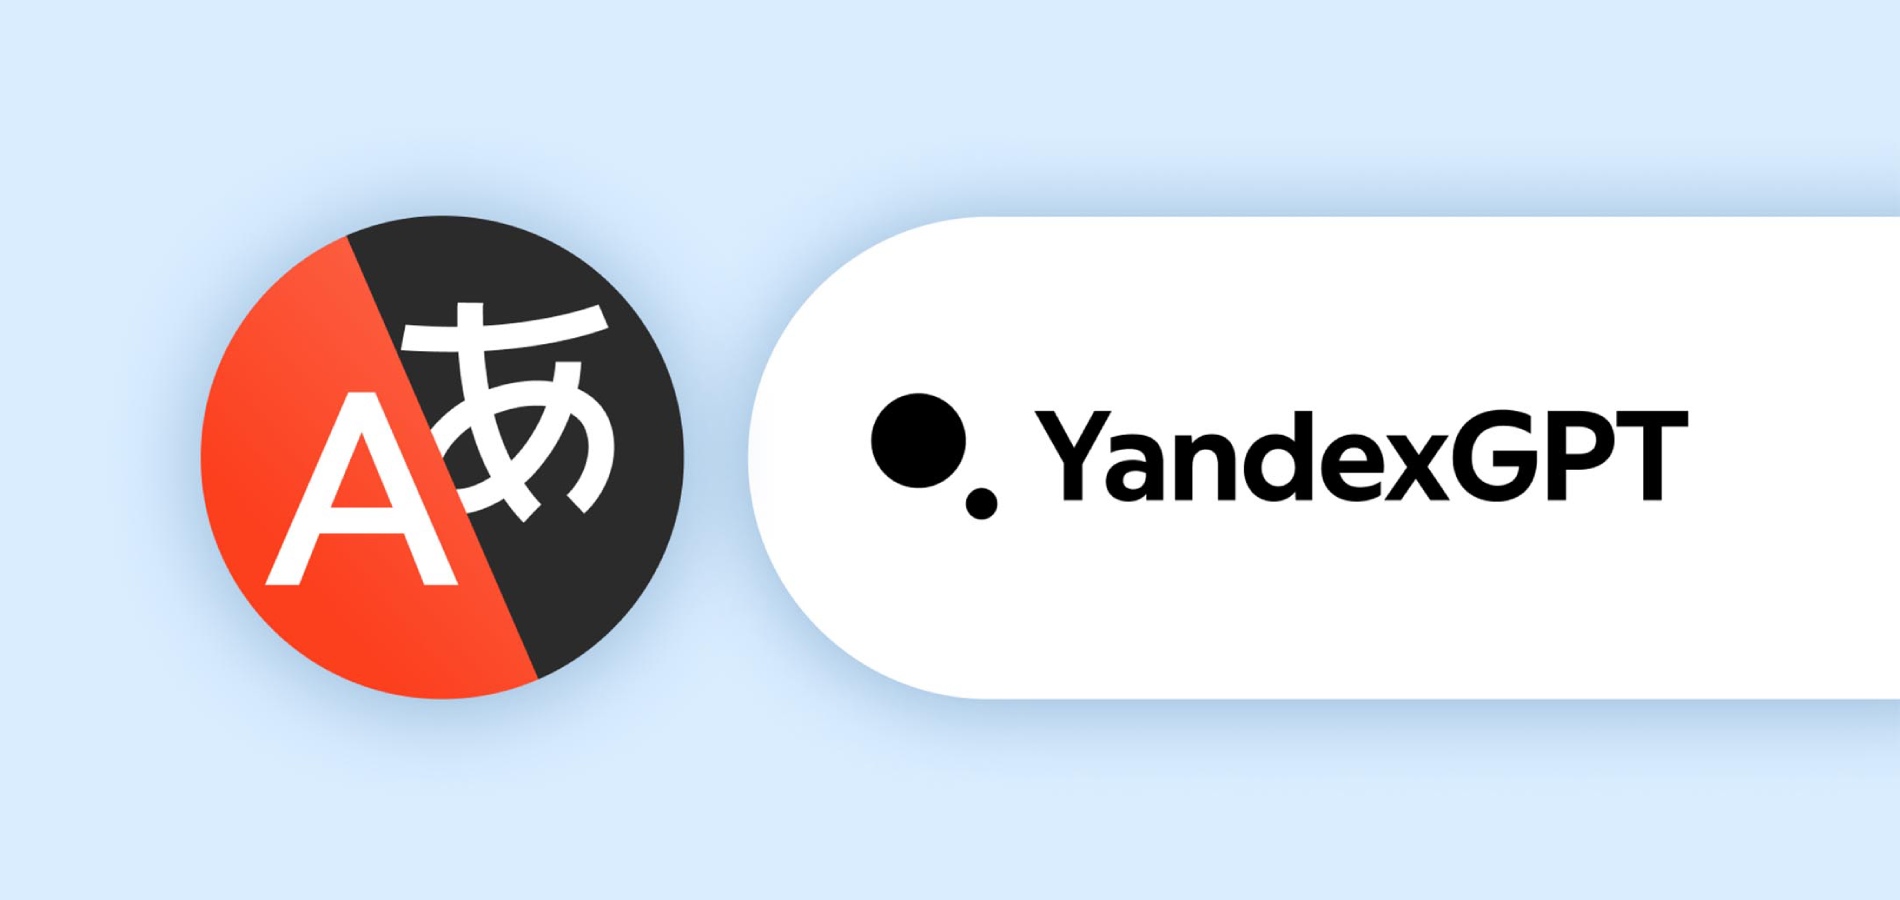 Яндекс улучшил машинный перевод с помощью языковой модели YandexGPT